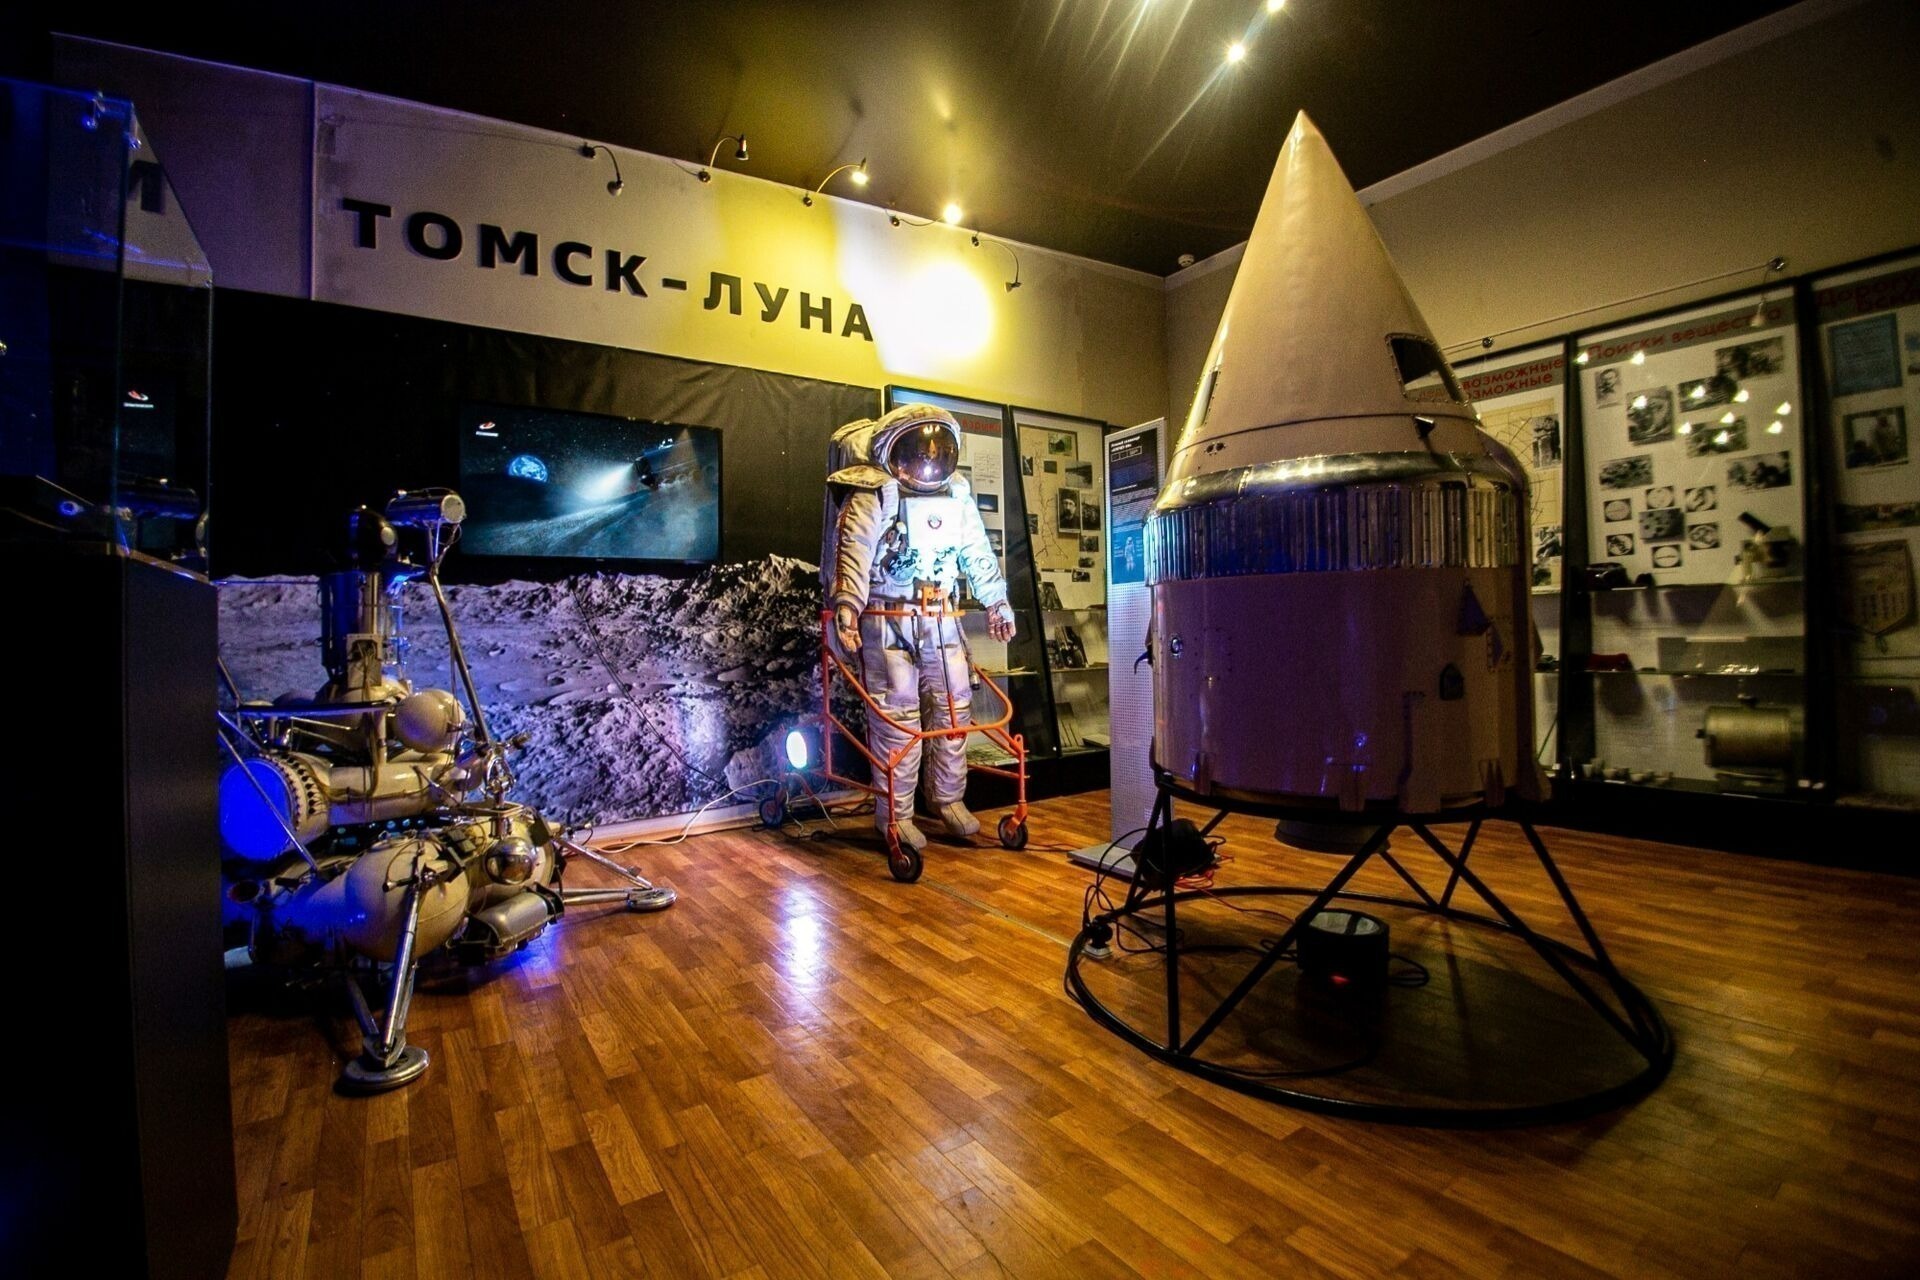 Экскурсия к Луне или традиции народов Севера: музейная афиша Томска